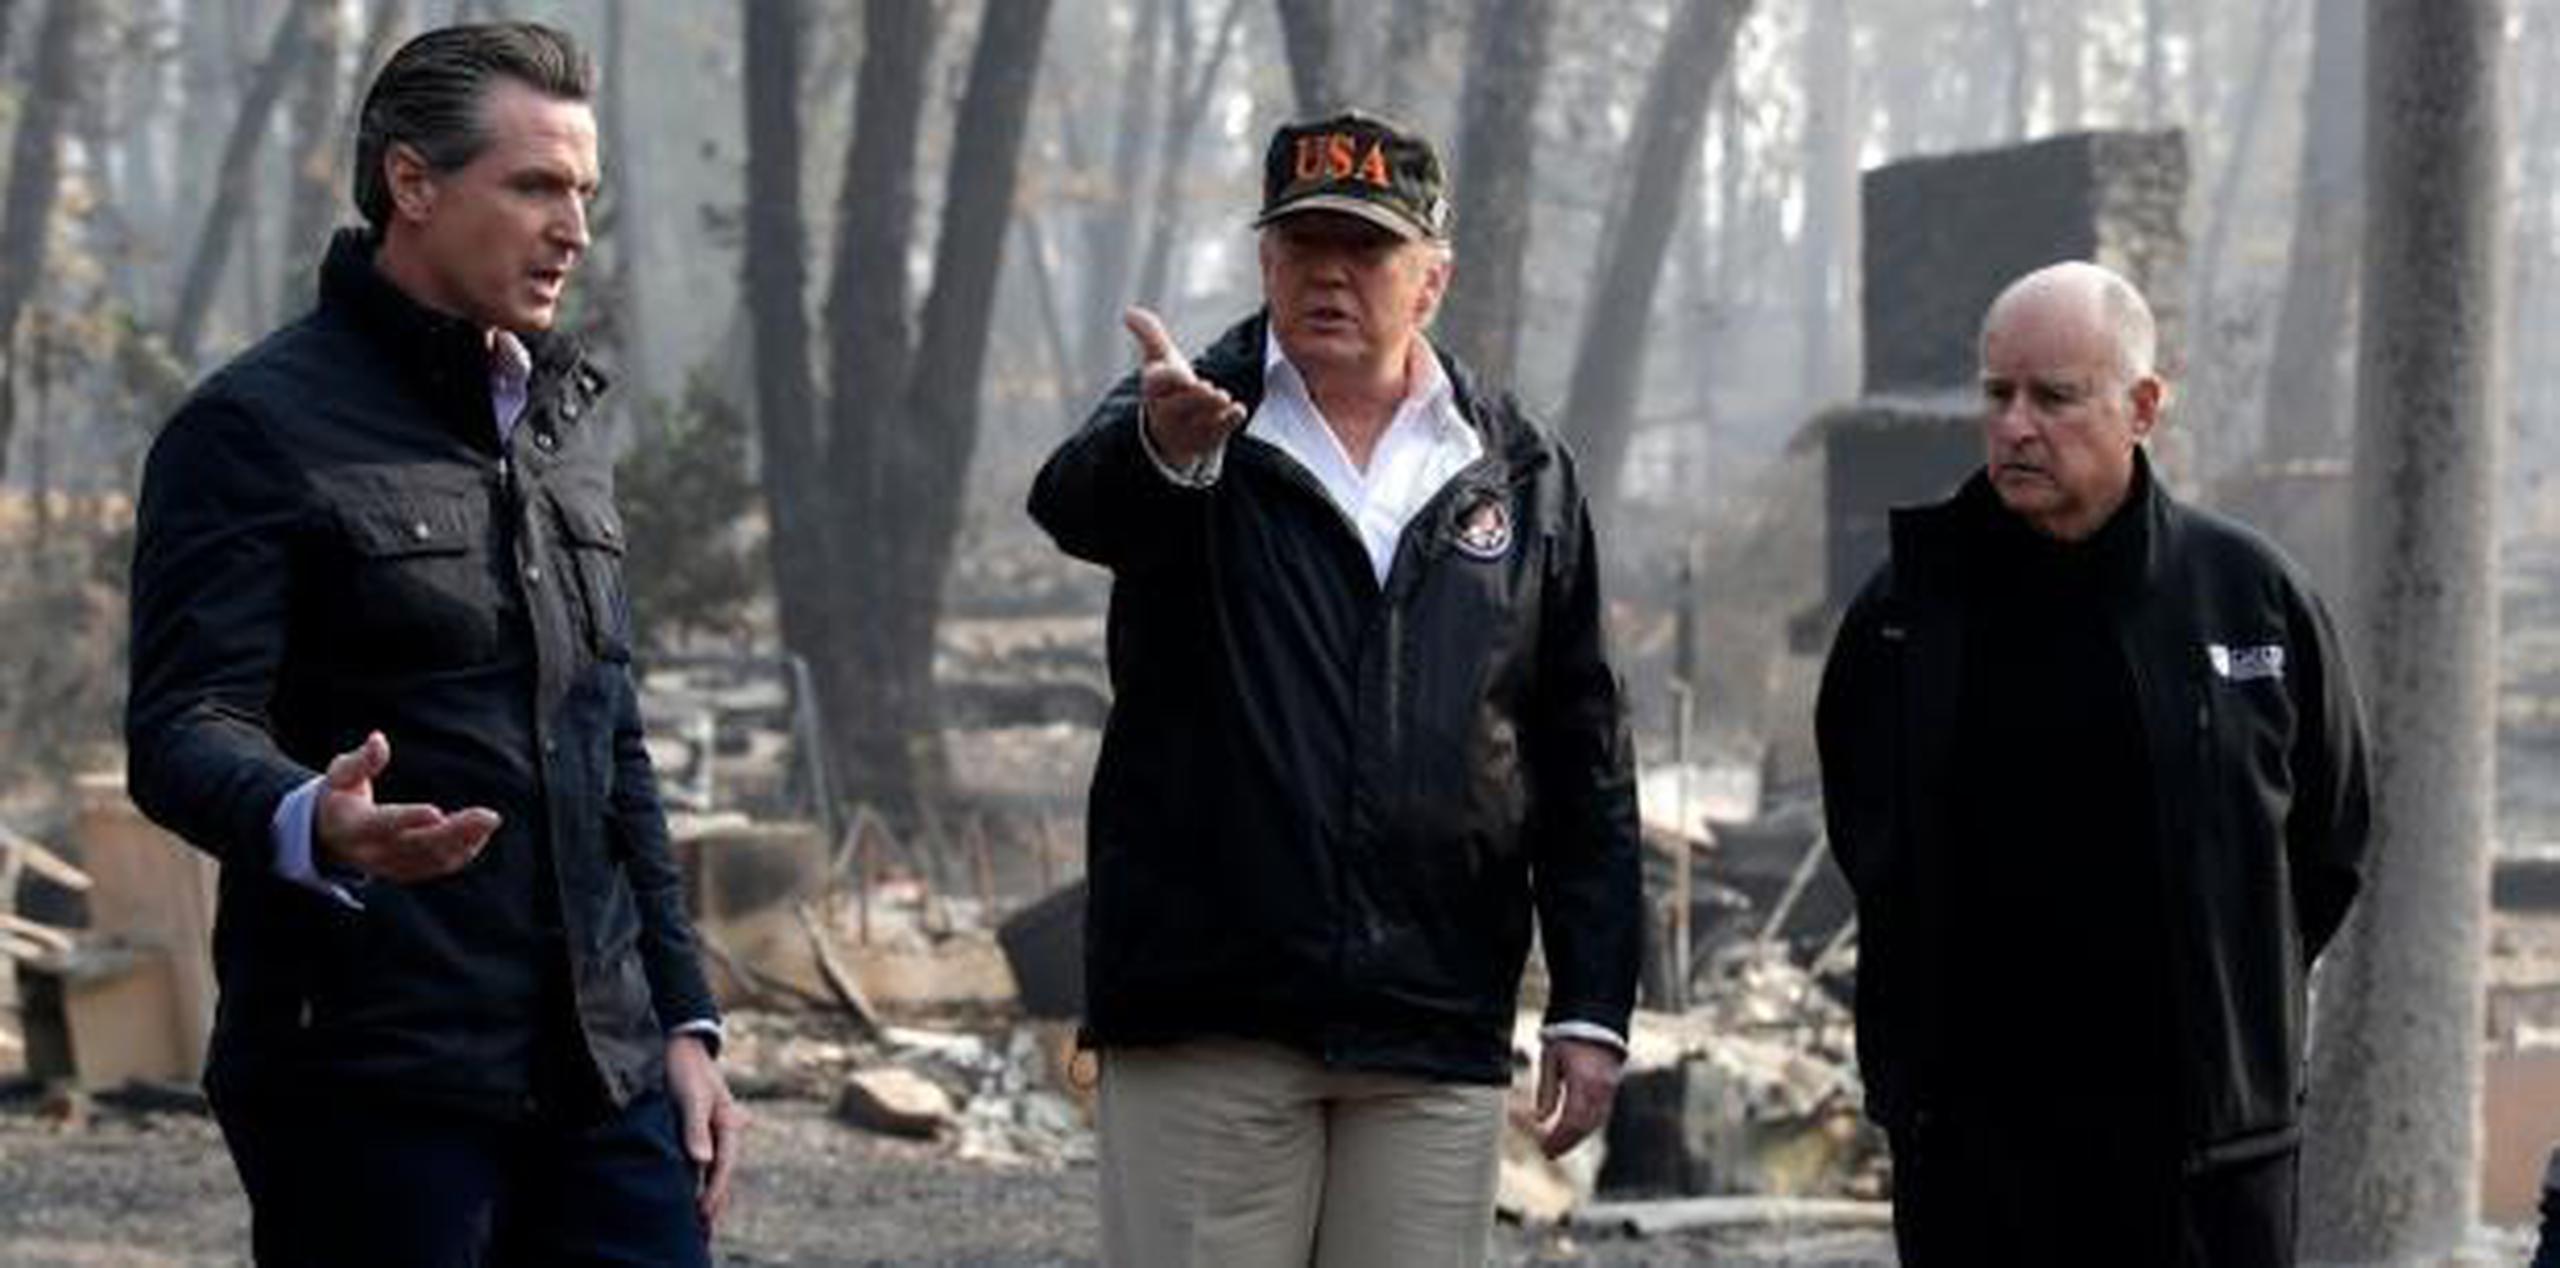 Cuando se le preguntó si haber presenciado esta devastación histórica que abarcó millas, destruyó vecindarios y calcinó campos, alteraba su opinión sobre el cambio climático, Trump respondió que “No”. (AP)